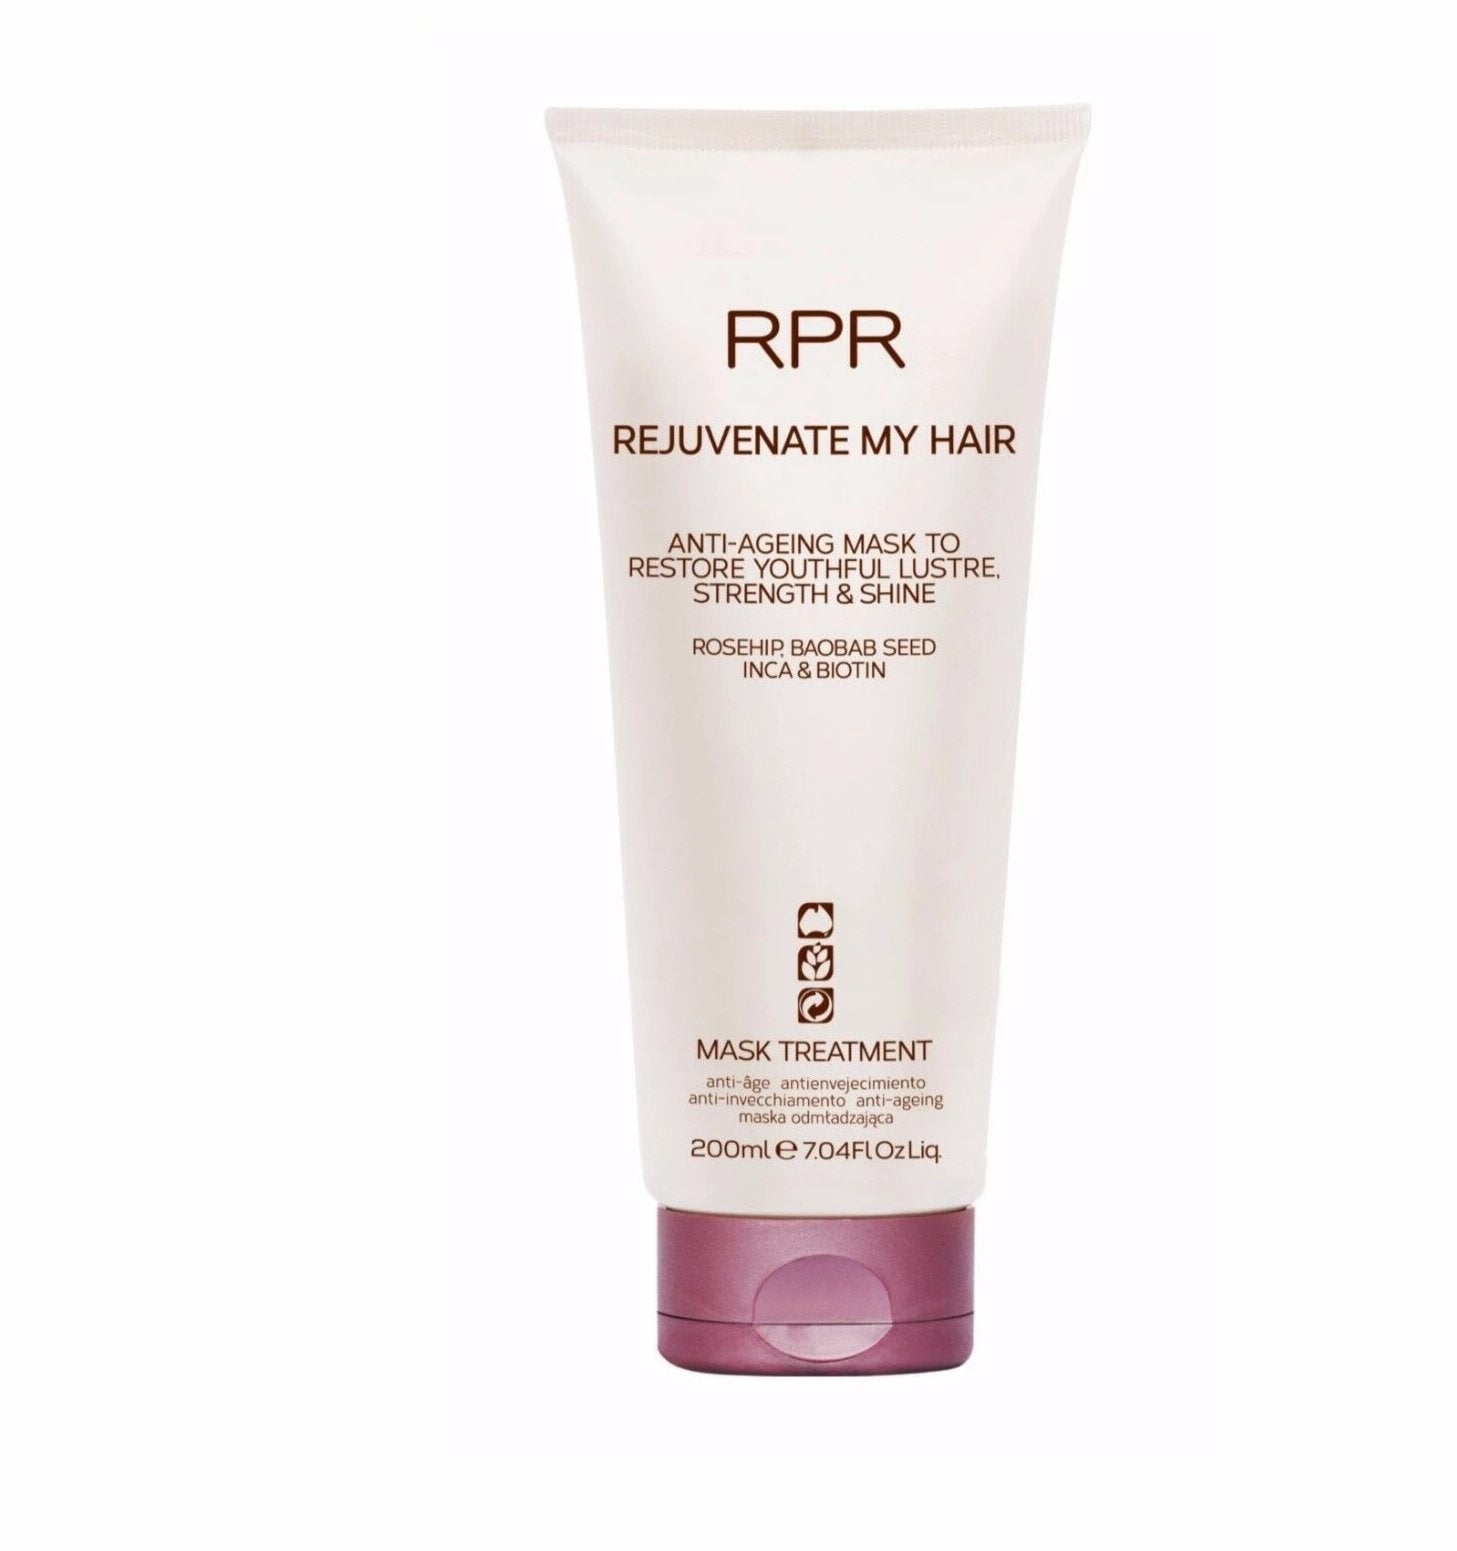 iaahhaircare,RPR REJUVENATE MY HAIR  Treatment Mask New Packaging,Treatments,Rejuvenate My Hair RPR